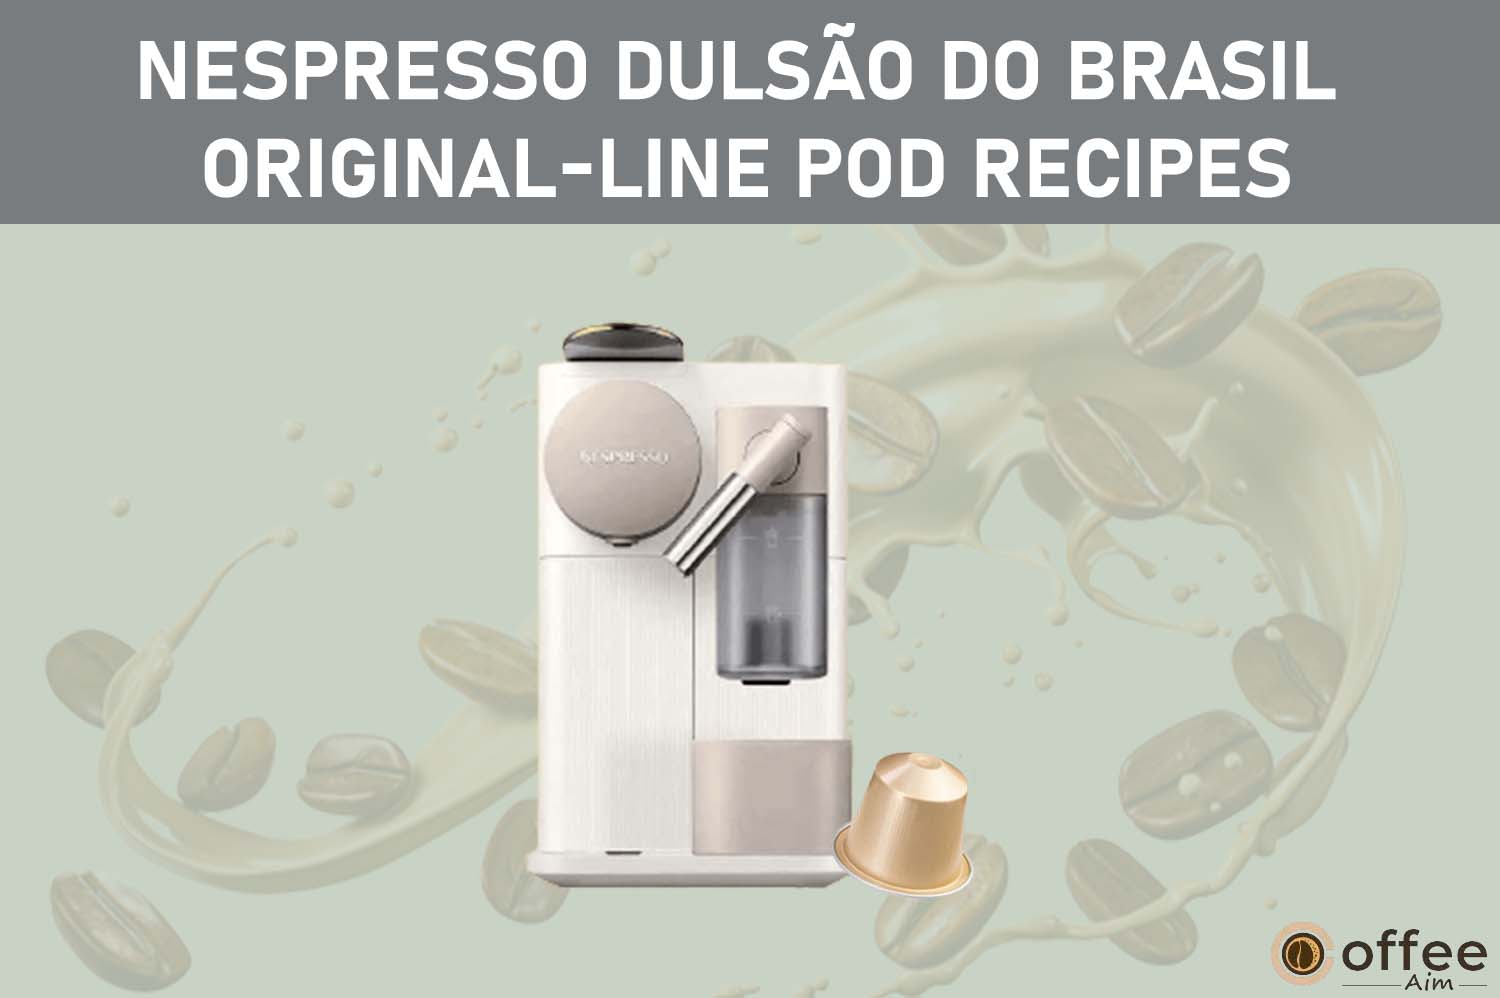 Featured image for the article "Nespresso Dulsão do Brasil Original-Line Pod Recipes"